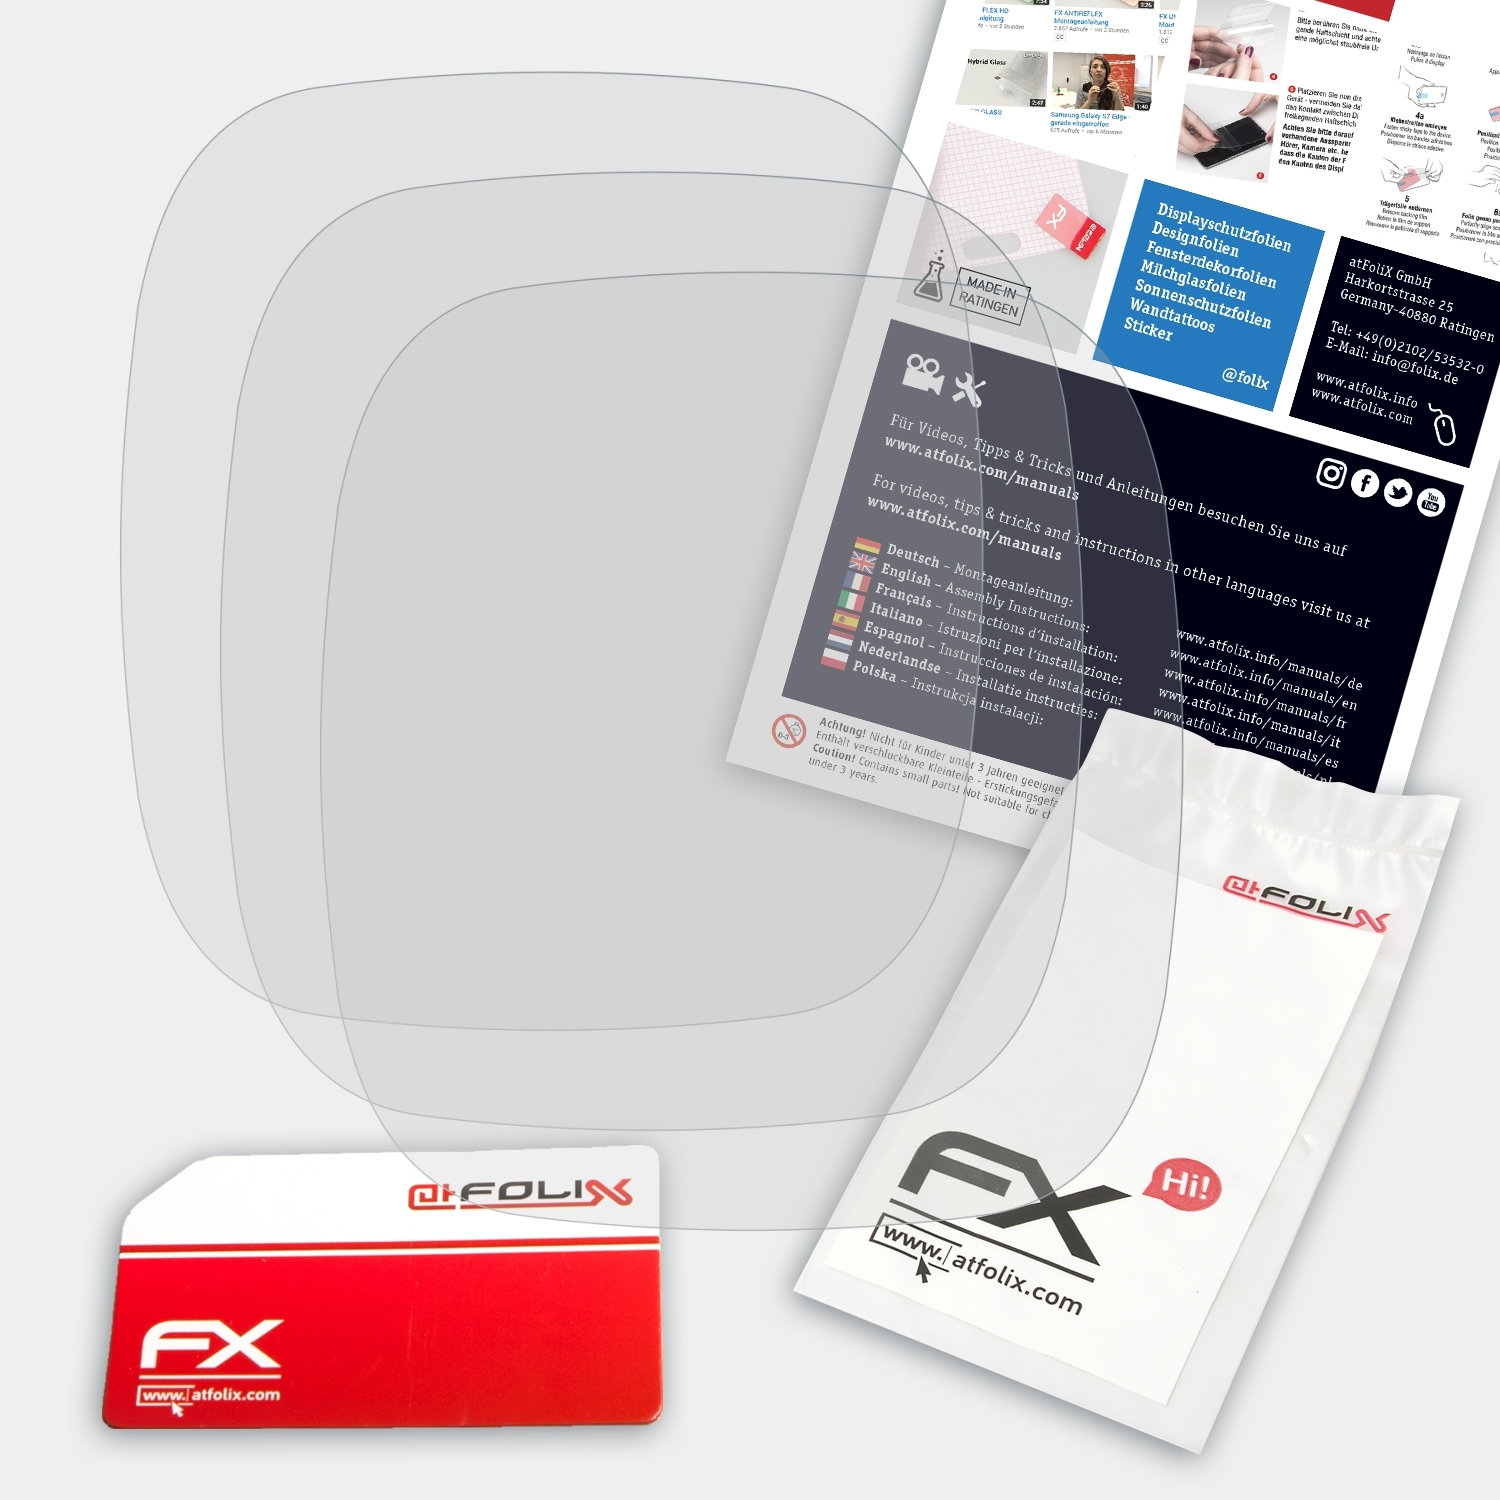 ATFOLIX Sigma 26.14) Displayschutz(für 3x PC FX-Antireflex